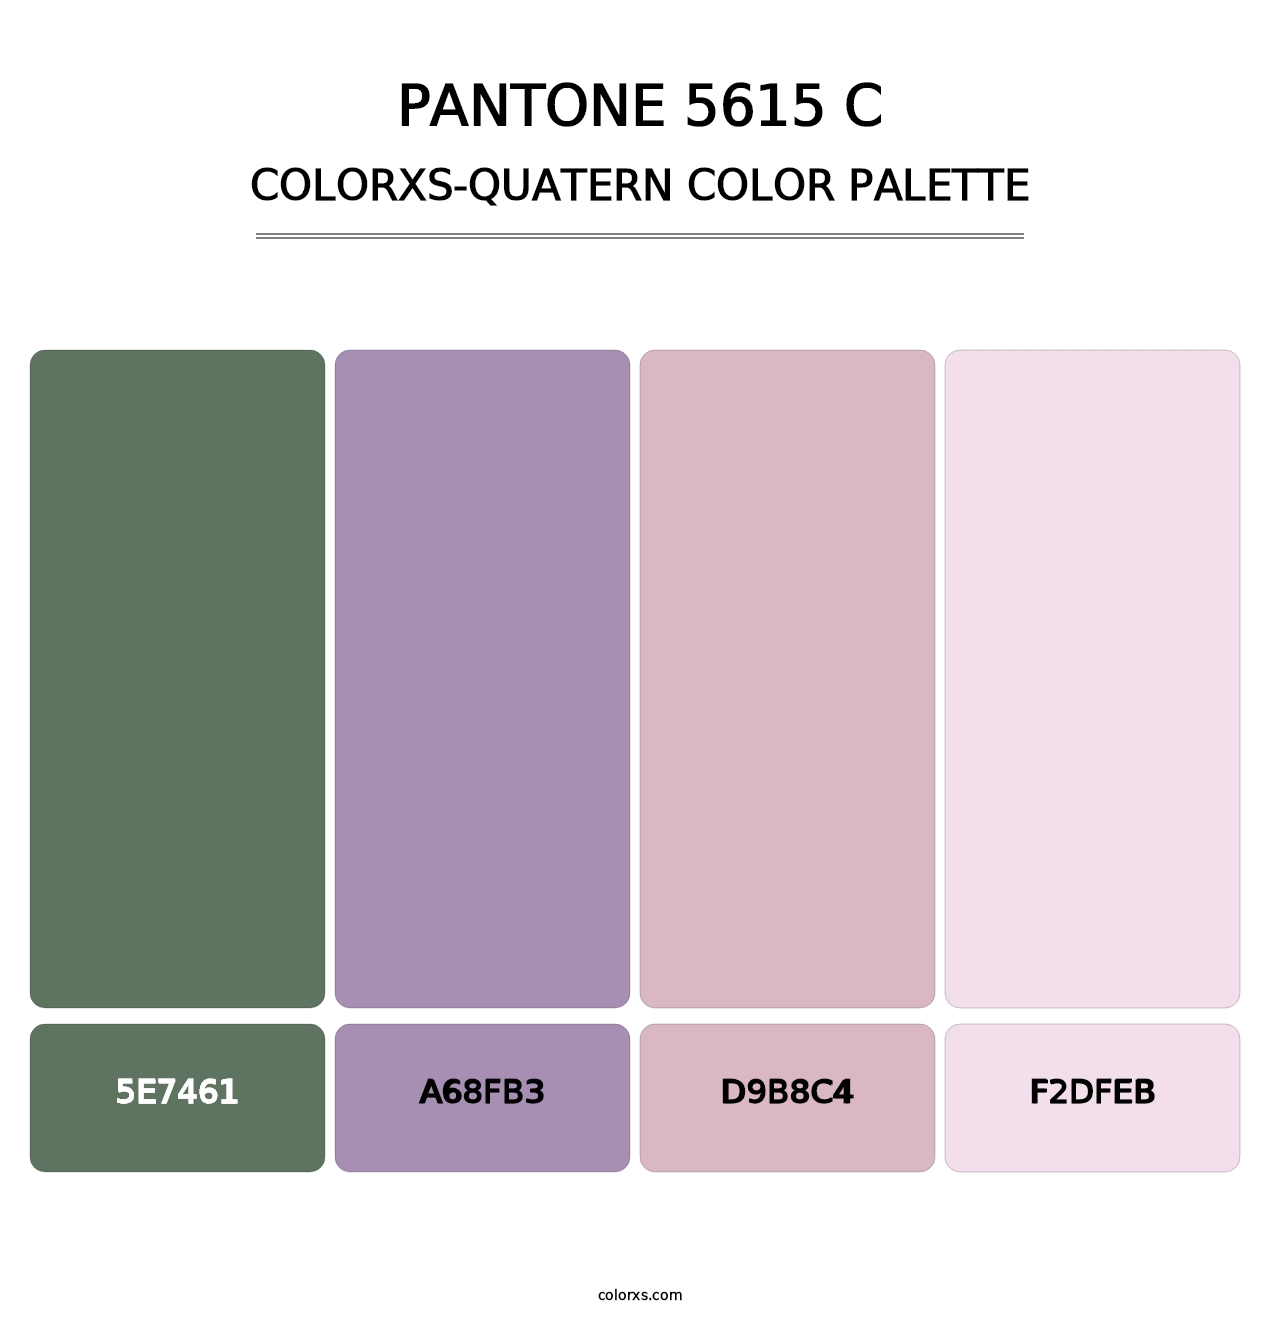 PANTONE 5615 C - Colorxs Quatern Palette